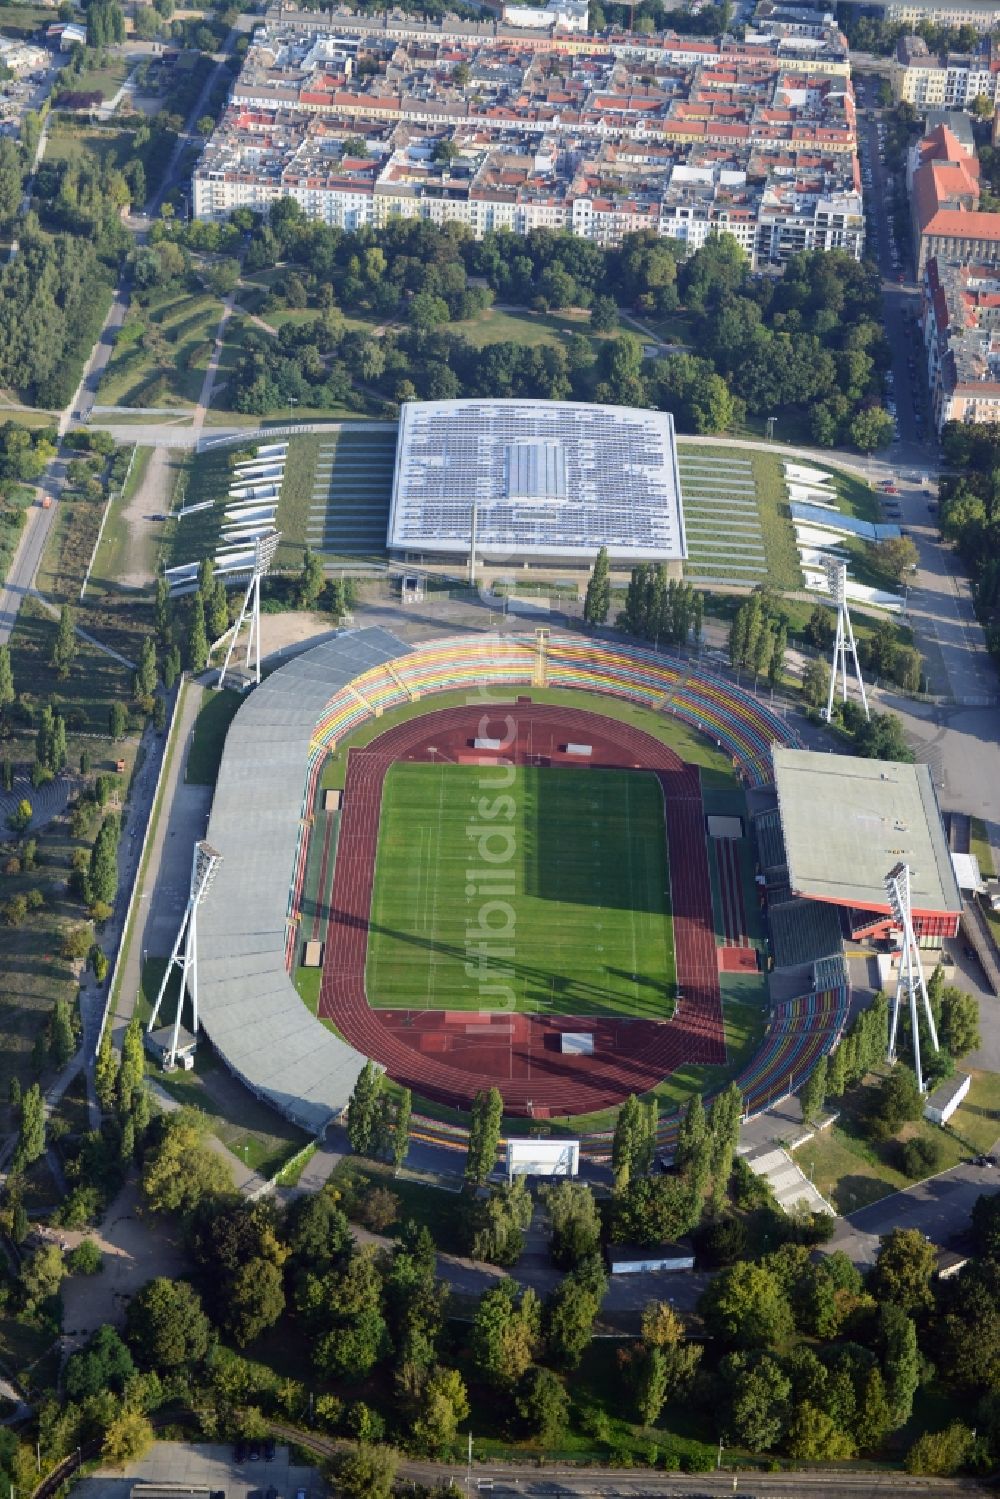 Luftaufnahme Berlin Prenzlauer Berg - Stadion am Friedrich-Ludwig-Jahn-Sportpark in Berlin Prenzlauer Berg